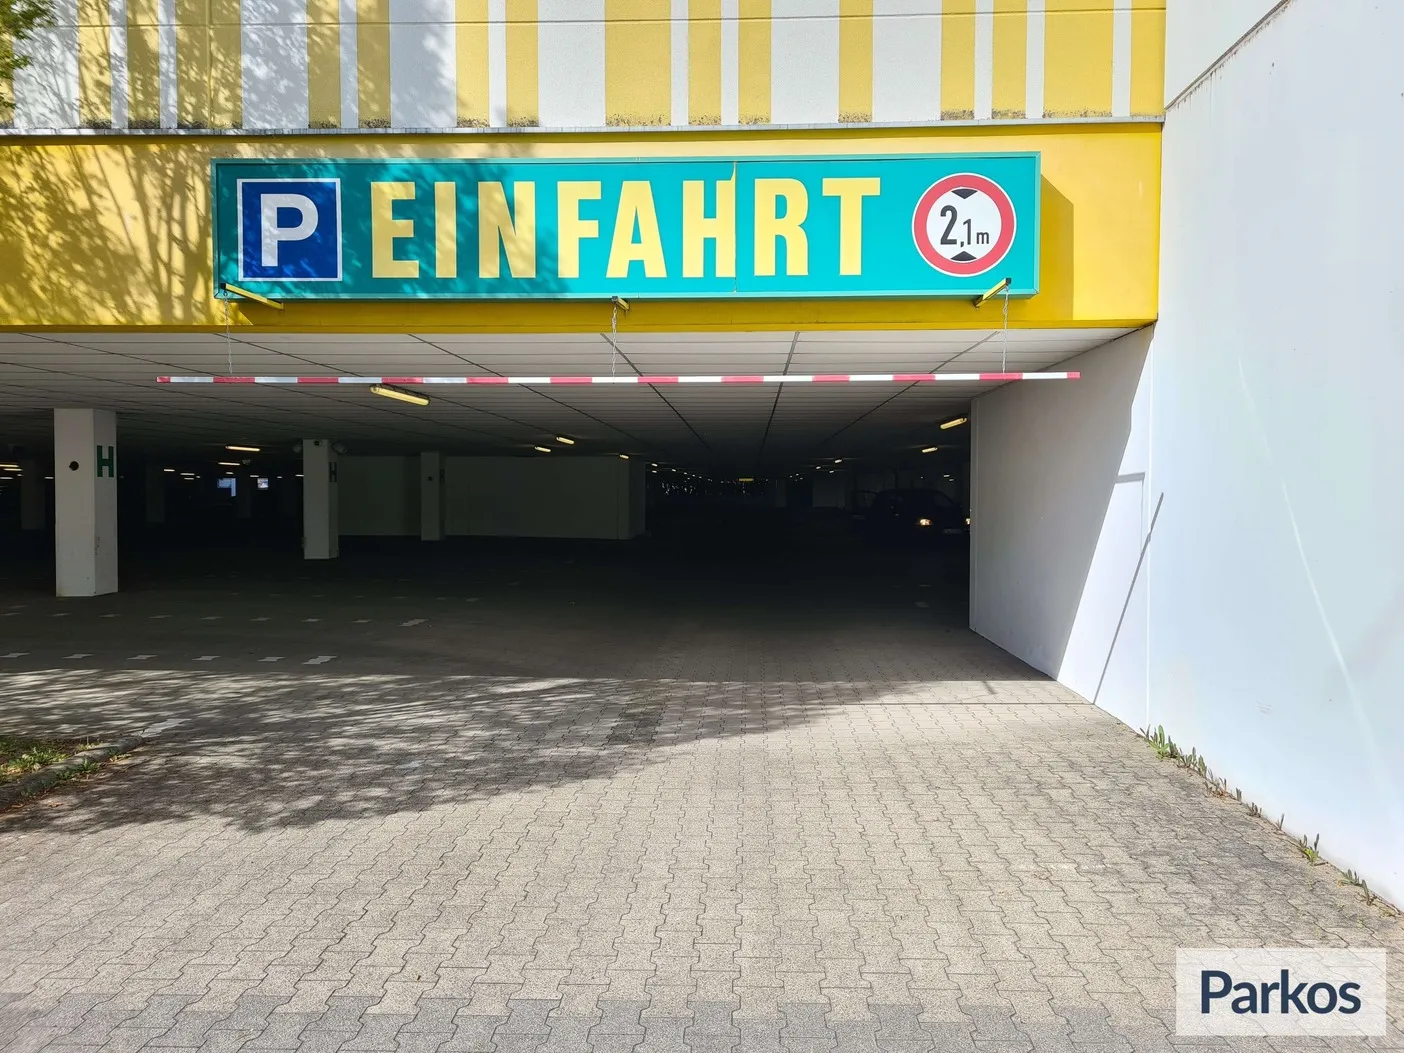 Parkoa - Parking Aéroport Stuttgart - picture 1